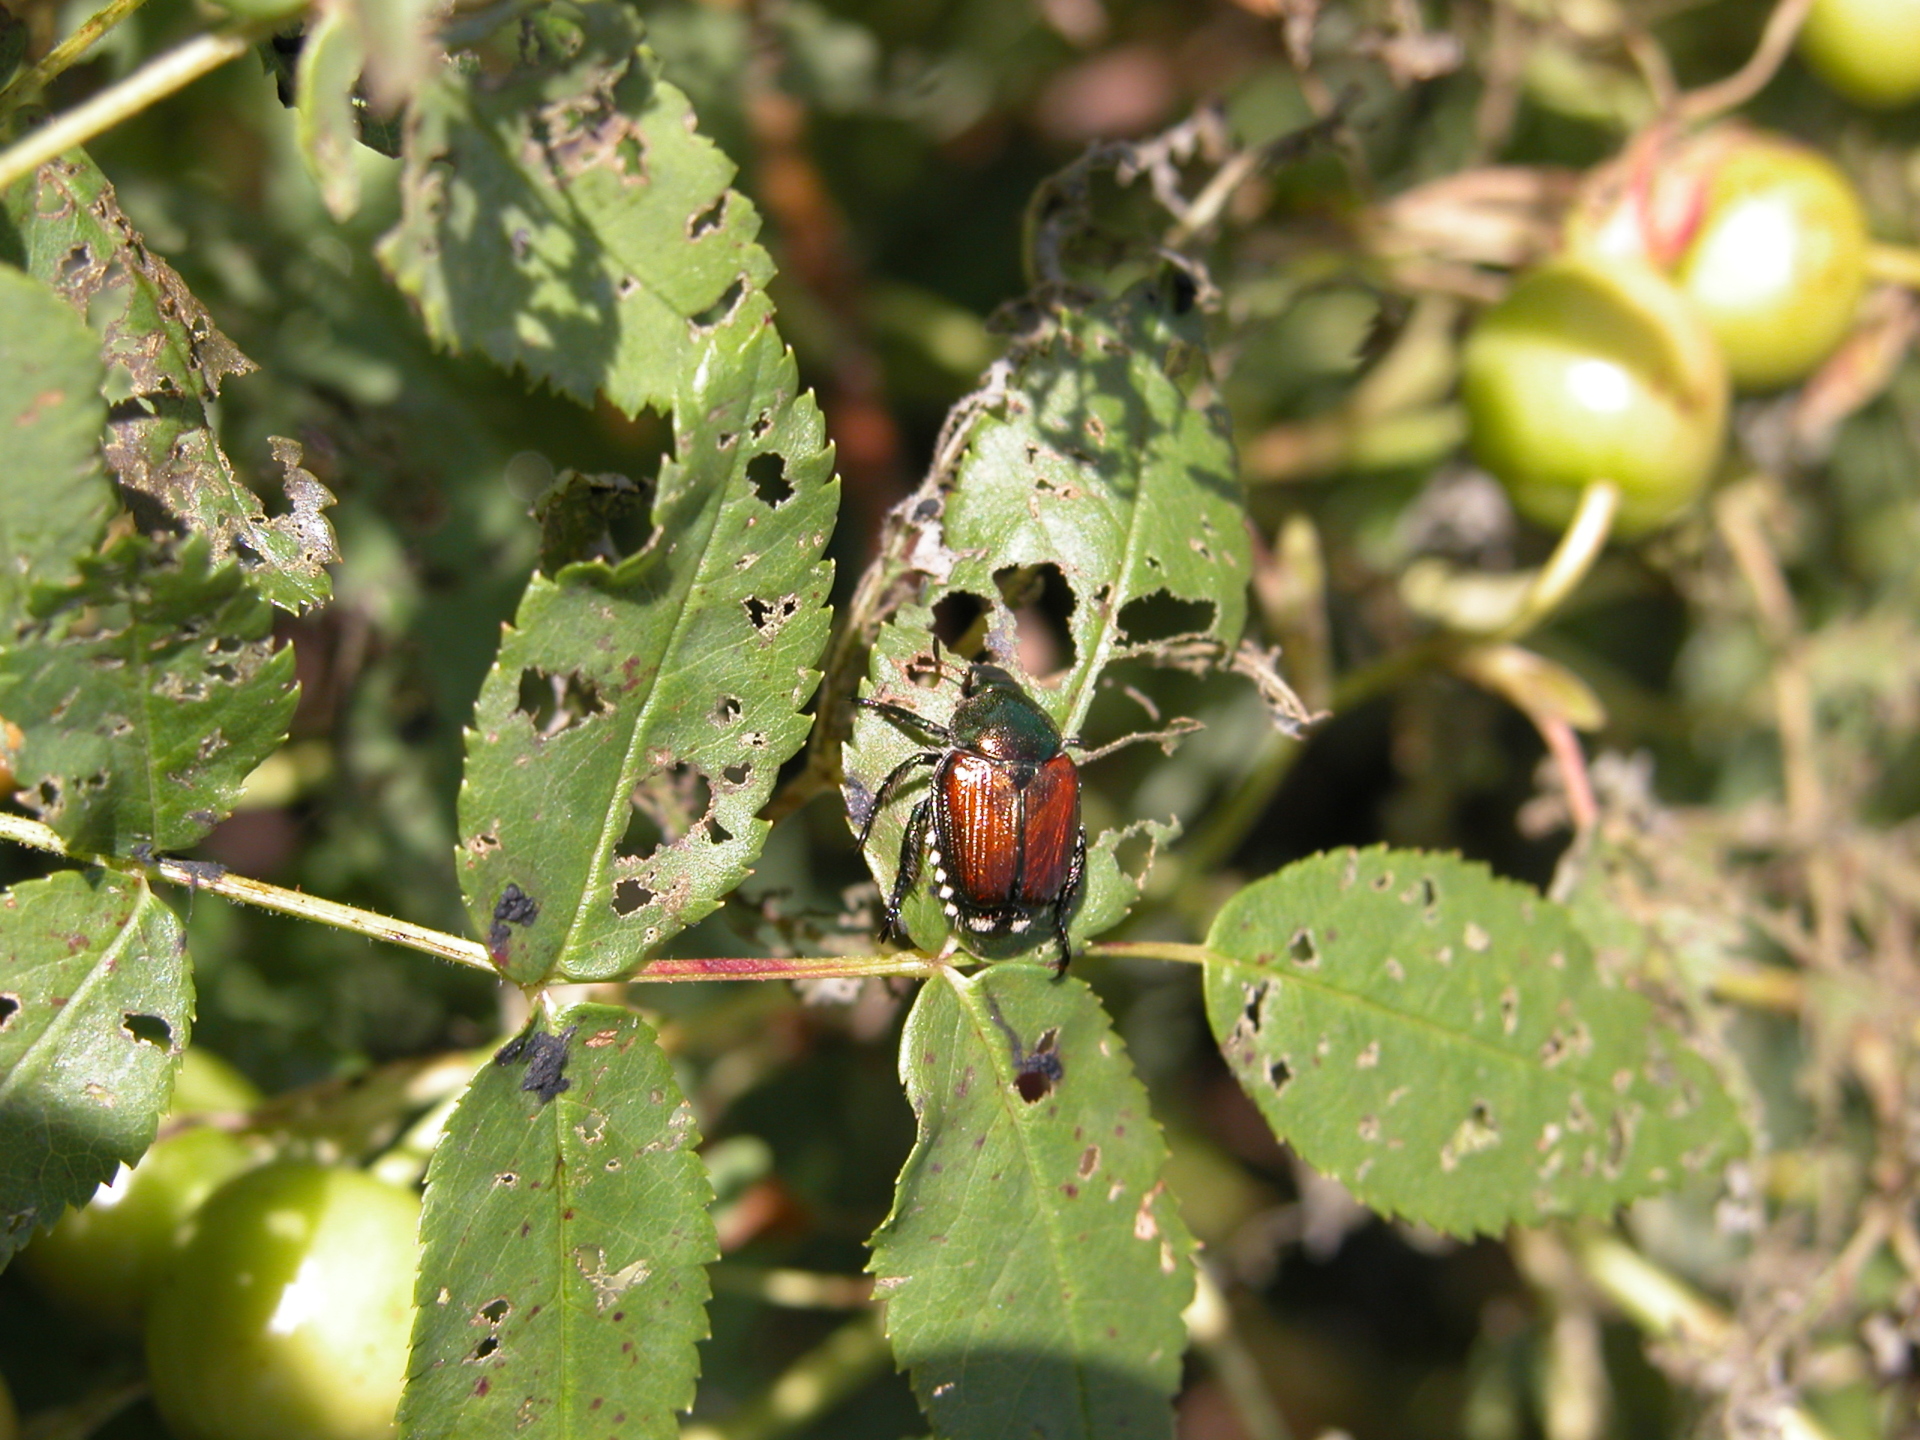 Adult Japanese Beetle